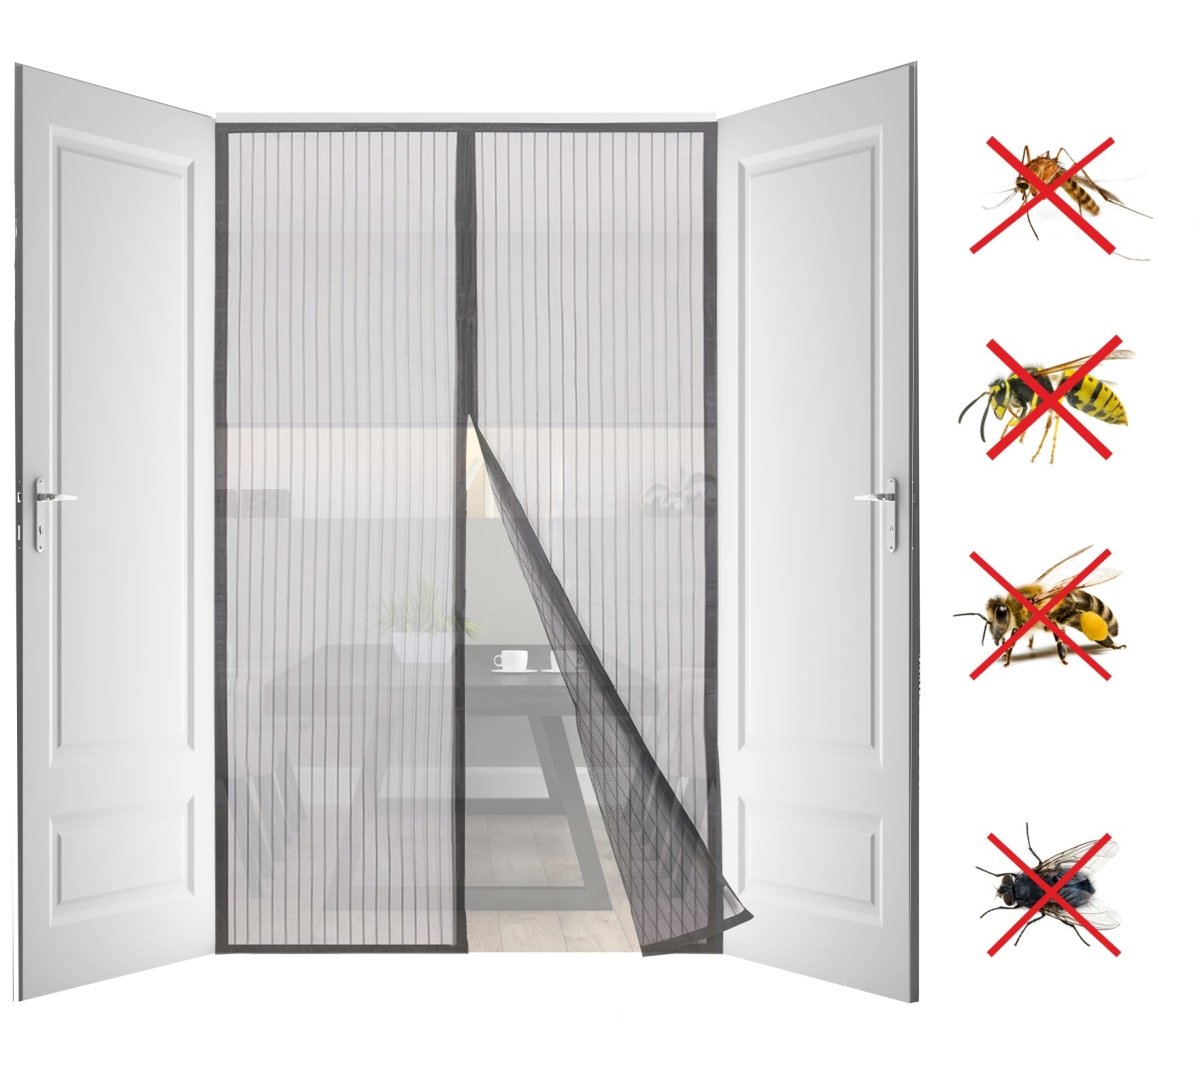 Mosquitera magnética de cortina para puertas - Cortina mosquitera con bandas magnéticas para su cierre automático a prueba de mosquitos